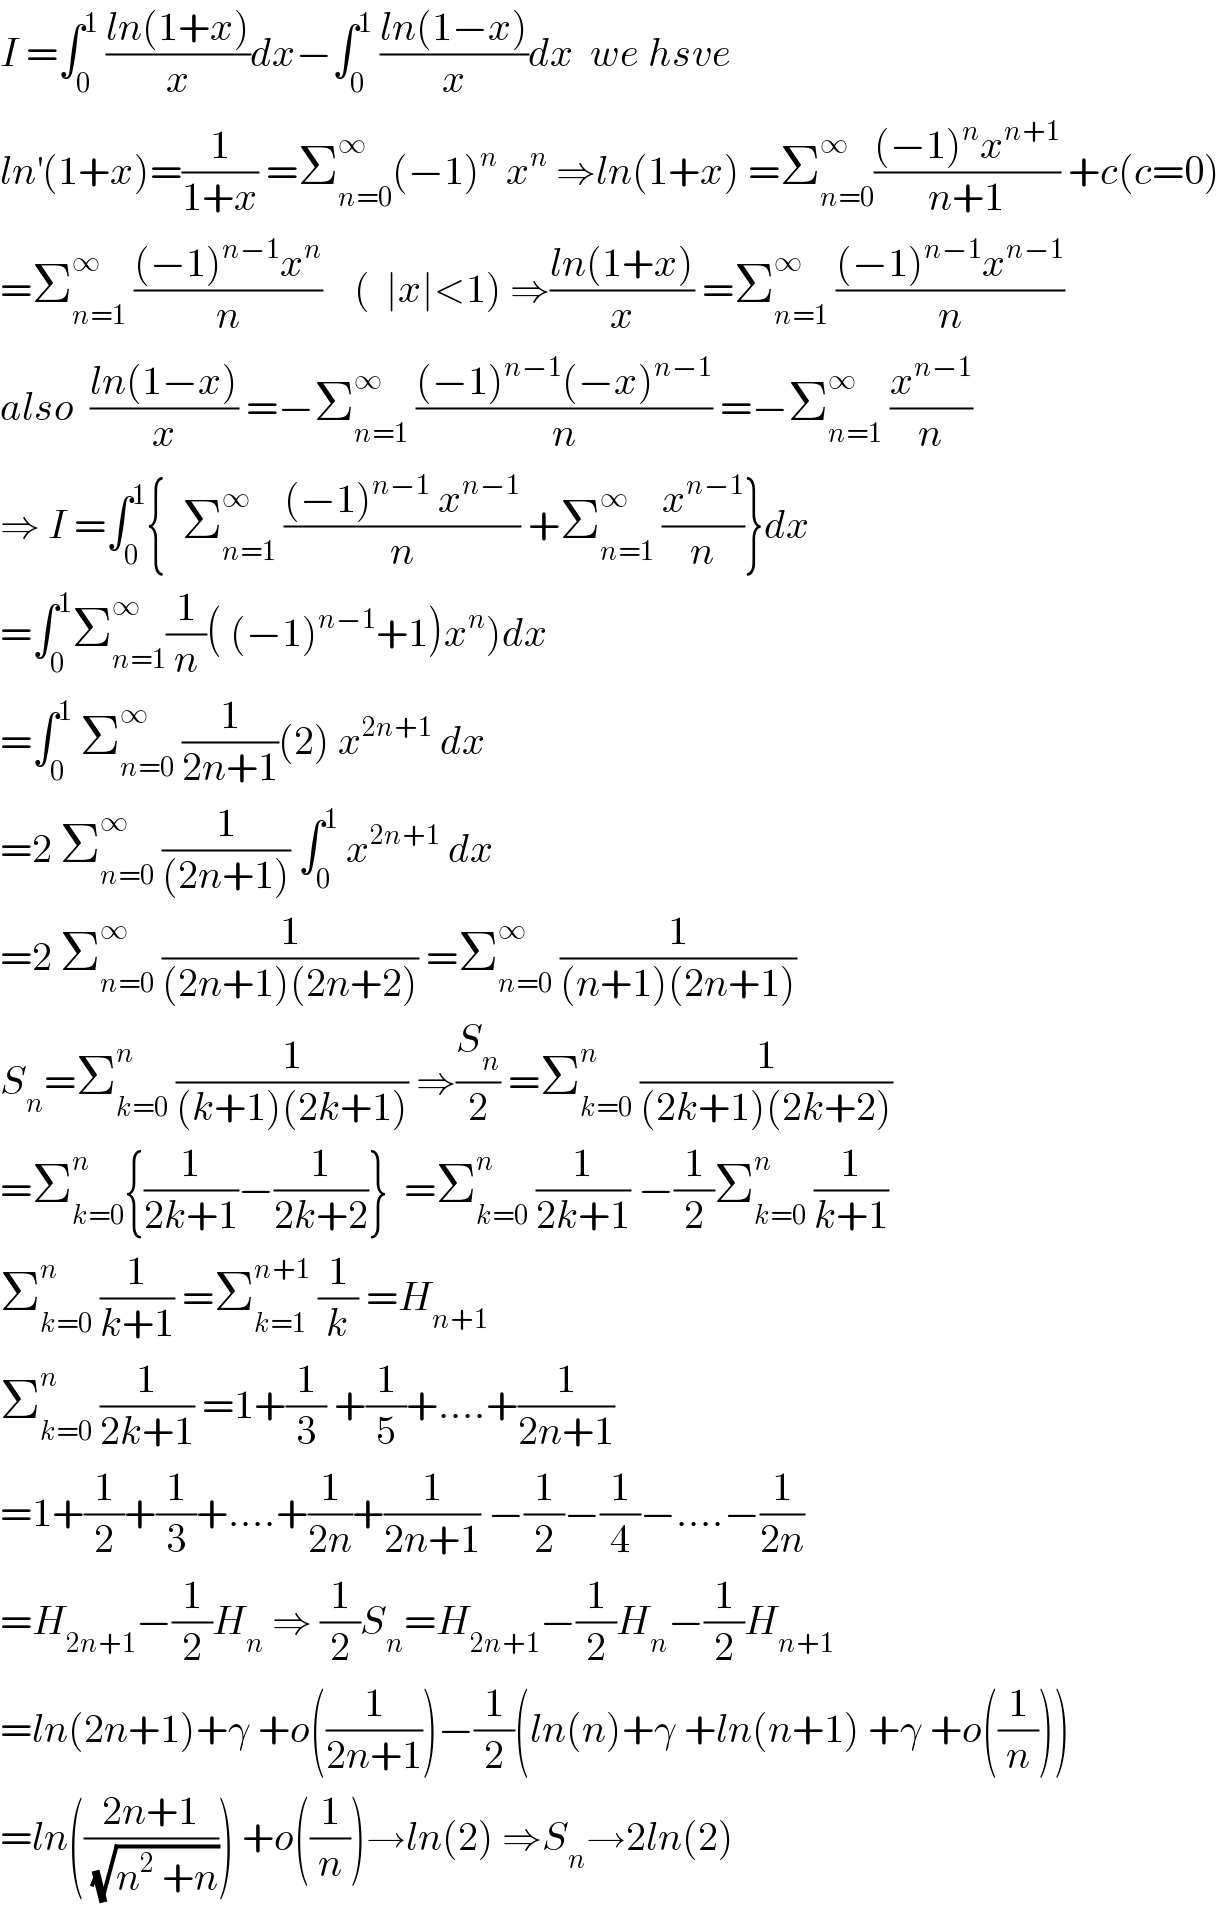 I =∫_0 ^1  ((ln(1+x))/x)dx−∫_0 ^1  ((ln(1−x))/x)dx  we hsve  ln^′ (1+x)=(1/(1+x)) =Σ_(n=0) ^∞ (−1)^n  x^n  ⇒ln(1+x) =Σ_(n=0) ^∞ (((−1)^n x^(n+1) )/(n+1)) +c(c=0)  =Σ_(n=1) ^∞  (((−1)^(n−1) x^n )/n)    (  ∣x∣<1) ⇒((ln(1+x))/x) =Σ_(n=1) ^∞  (((−1)^(n−1) x^(n−1) )/n)  also  ((ln(1−x))/x) =−Σ_(n=1) ^∞  (((−1)^(n−1) (−x)^(n−1) )/n) =−Σ_(n=1) ^∞  (x^(n−1) /n)  ⇒ I =∫_0 ^1 {  Σ_(n=1) ^∞  (((−1)^(n−1)  x^(n−1) )/n) +Σ_(n=1) ^∞  (x^(n−1) /n)}dx  =∫_0 ^1 Σ_(n=1) ^∞ (1/n)( (−1)^(n−1) +1)x^n )dx  =∫_0 ^1  Σ_(n=0) ^∞  (1/(2n+1))(2) x^(2n+1)  dx  =2 Σ_(n=0) ^∞  (1/((2n+1))) ∫_0 ^1  x^(2n+1)  dx  =2 Σ_(n=0) ^∞  (1/((2n+1)(2n+2))) =Σ_(n=0) ^∞  (1/((n+1)(2n+1)))  S_n =Σ_(k=0) ^n  (1/((k+1)(2k+1))) ⇒(S_n /2) =Σ_(k=0) ^n  (1/((2k+1)(2k+2)))  =Σ_(k=0) ^n {(1/(2k+1))−(1/(2k+2))}  =Σ_(k=0) ^n  (1/(2k+1)) −(1/2)Σ_(k=0) ^n  (1/(k+1))  Σ_(k=0) ^n  (1/(k+1)) =Σ_(k=1) ^(n+1)  (1/k) =H_(n+1)   Σ_(k=0) ^n  (1/(2k+1)) =1+(1/3) +(1/5)+....+(1/(2n+1))  =1+(1/2)+(1/3)+....+(1/(2n))+(1/(2n+1)) −(1/2)−(1/4)−....−(1/(2n))  =H_(2n+1) −(1/2)H_n  ⇒ (1/2)S_n =H_(2n+1) −(1/2)H_n −(1/2)H_(n+1)   =ln(2n+1)+γ +o((1/(2n+1)))−(1/2)(ln(n)+γ +ln(n+1) +γ +o((1/n)))  =ln(((2n+1)/(√(n^2  +n)))) +o((1/n))→ln(2) ⇒S_n →2ln(2)  